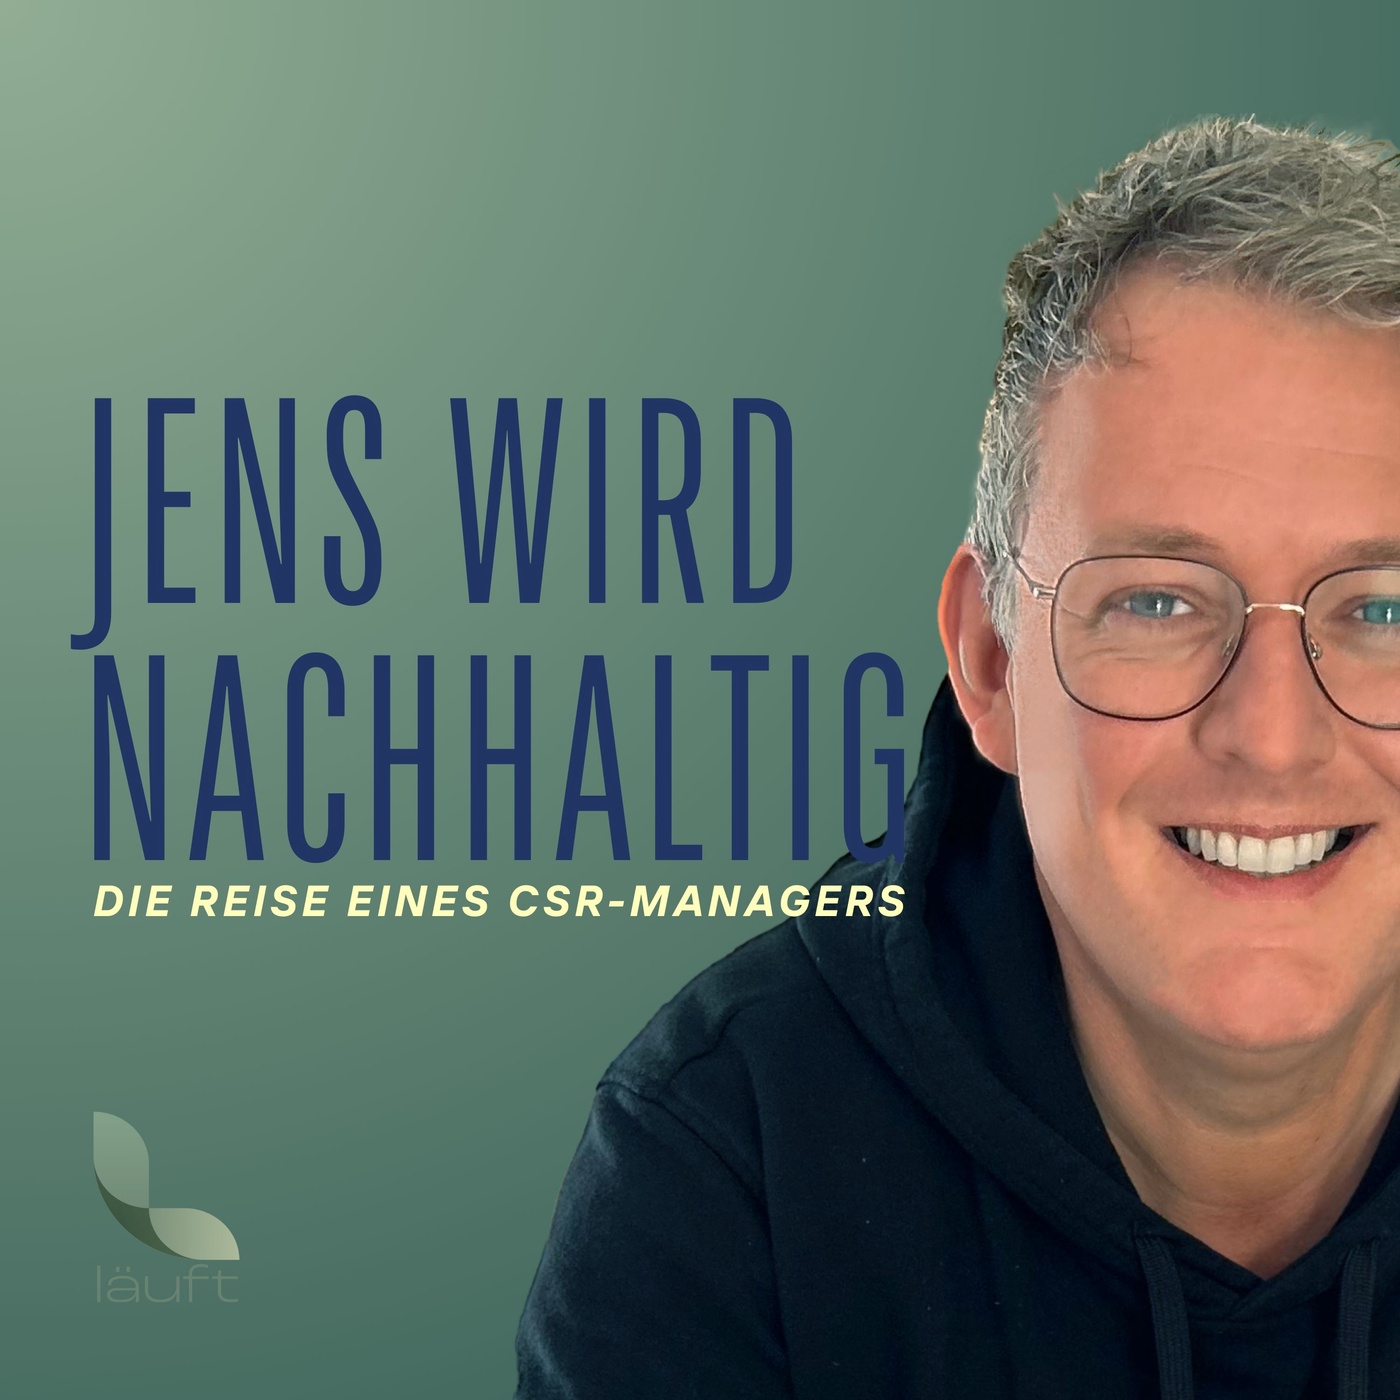 Jens wird nachhaltig | Die Reise eines CSR-Managers